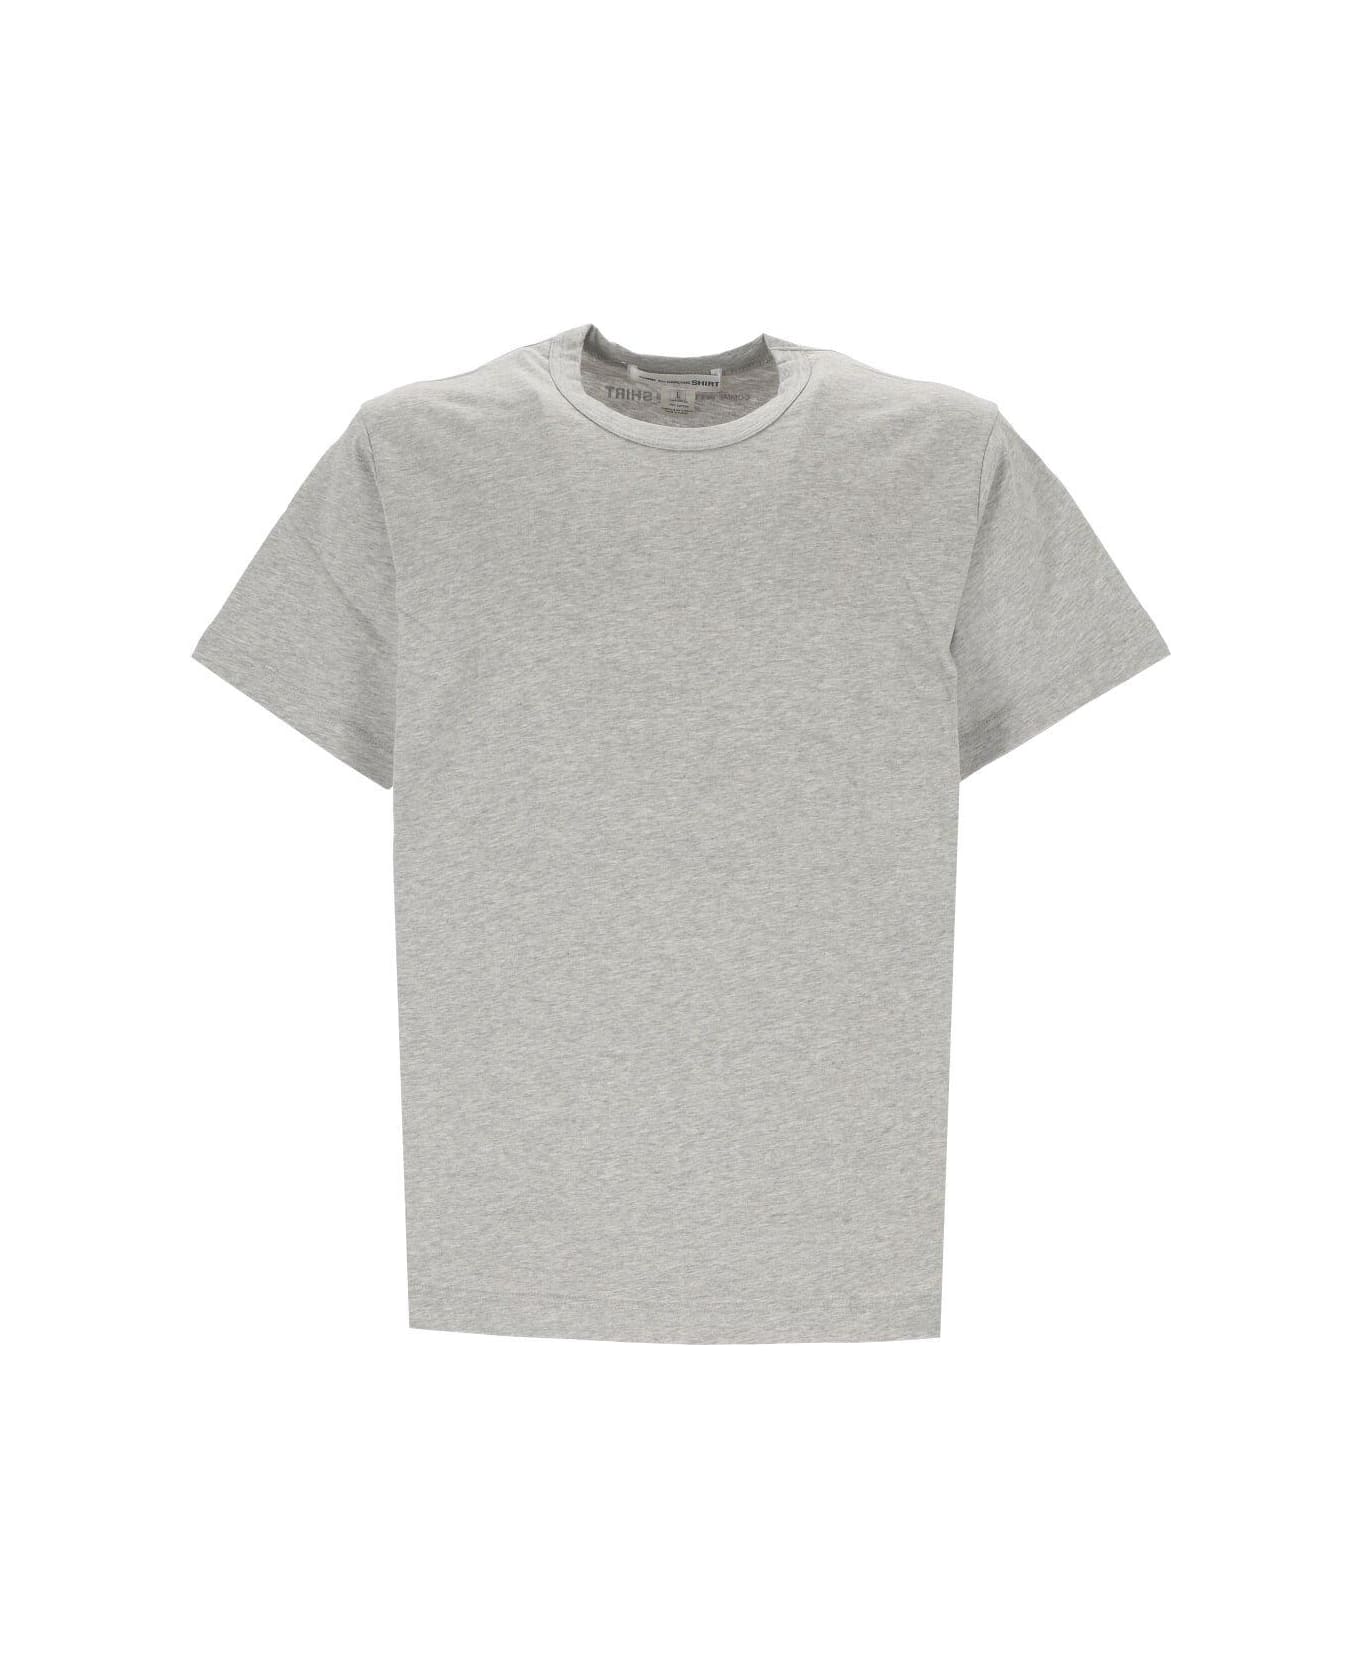 Comme des Garçons Logo Printed Crewneck T-shirt - TOP GREY